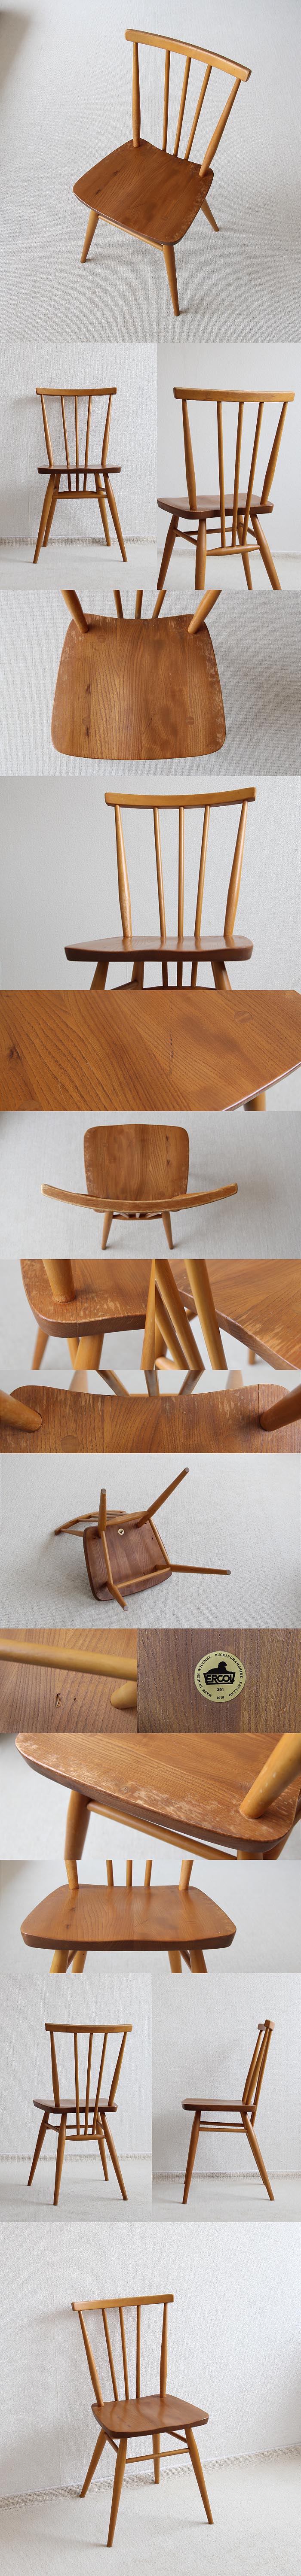 イギリス アンティーク アーコール スティックバックチェア 木製 椅子「ERCOL」V-358